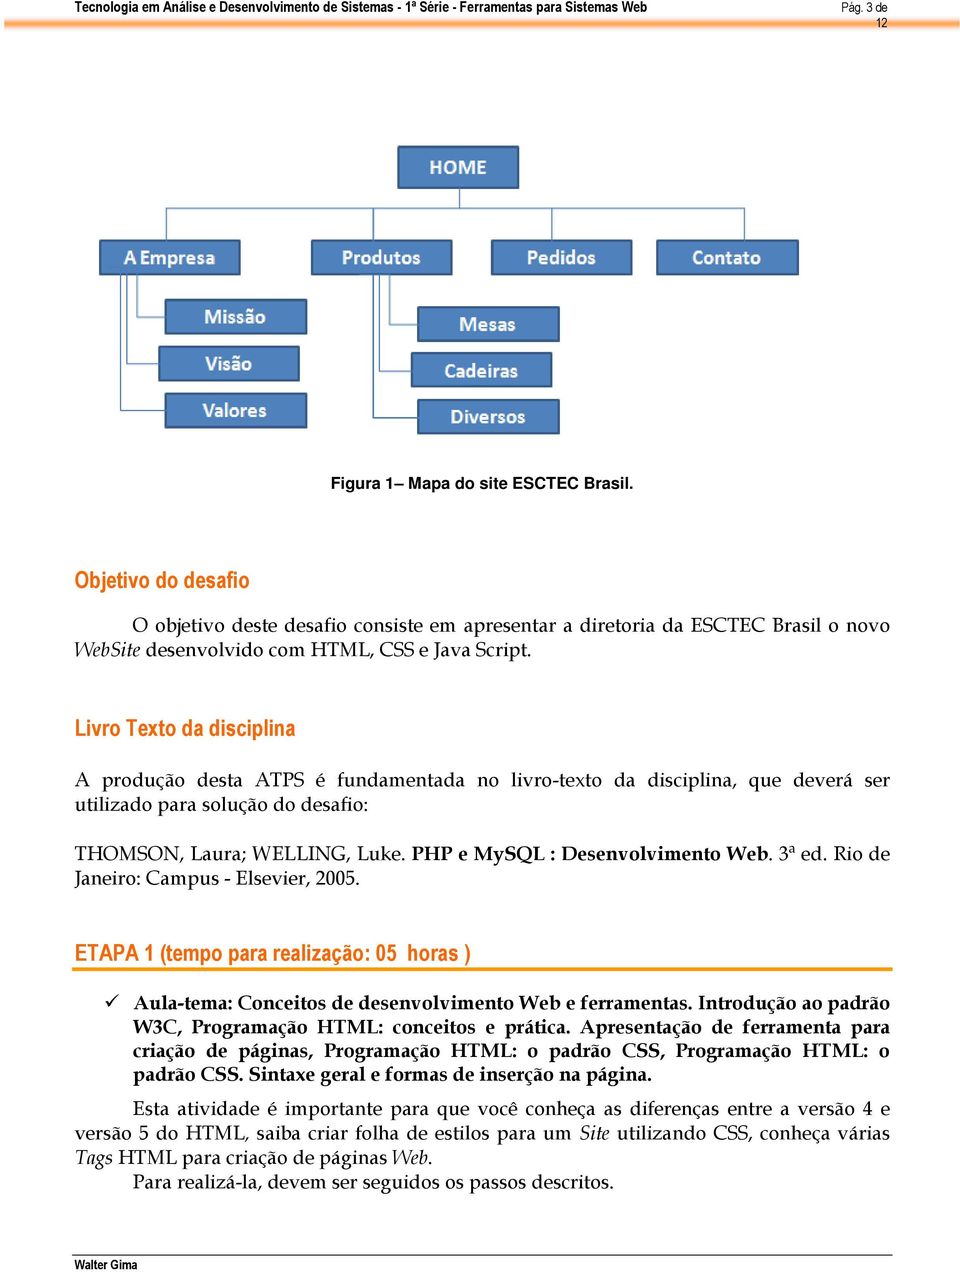 PHP e MySQL : Desenvolvimento Web. 3ª ed. Rio de Janeiro: Campus - Elsevier, 2005. ETAPA 1 (tempo para realização: 05 horas ) Aula-tema: Conceitos de desenvolvimento Web e ferramentas.